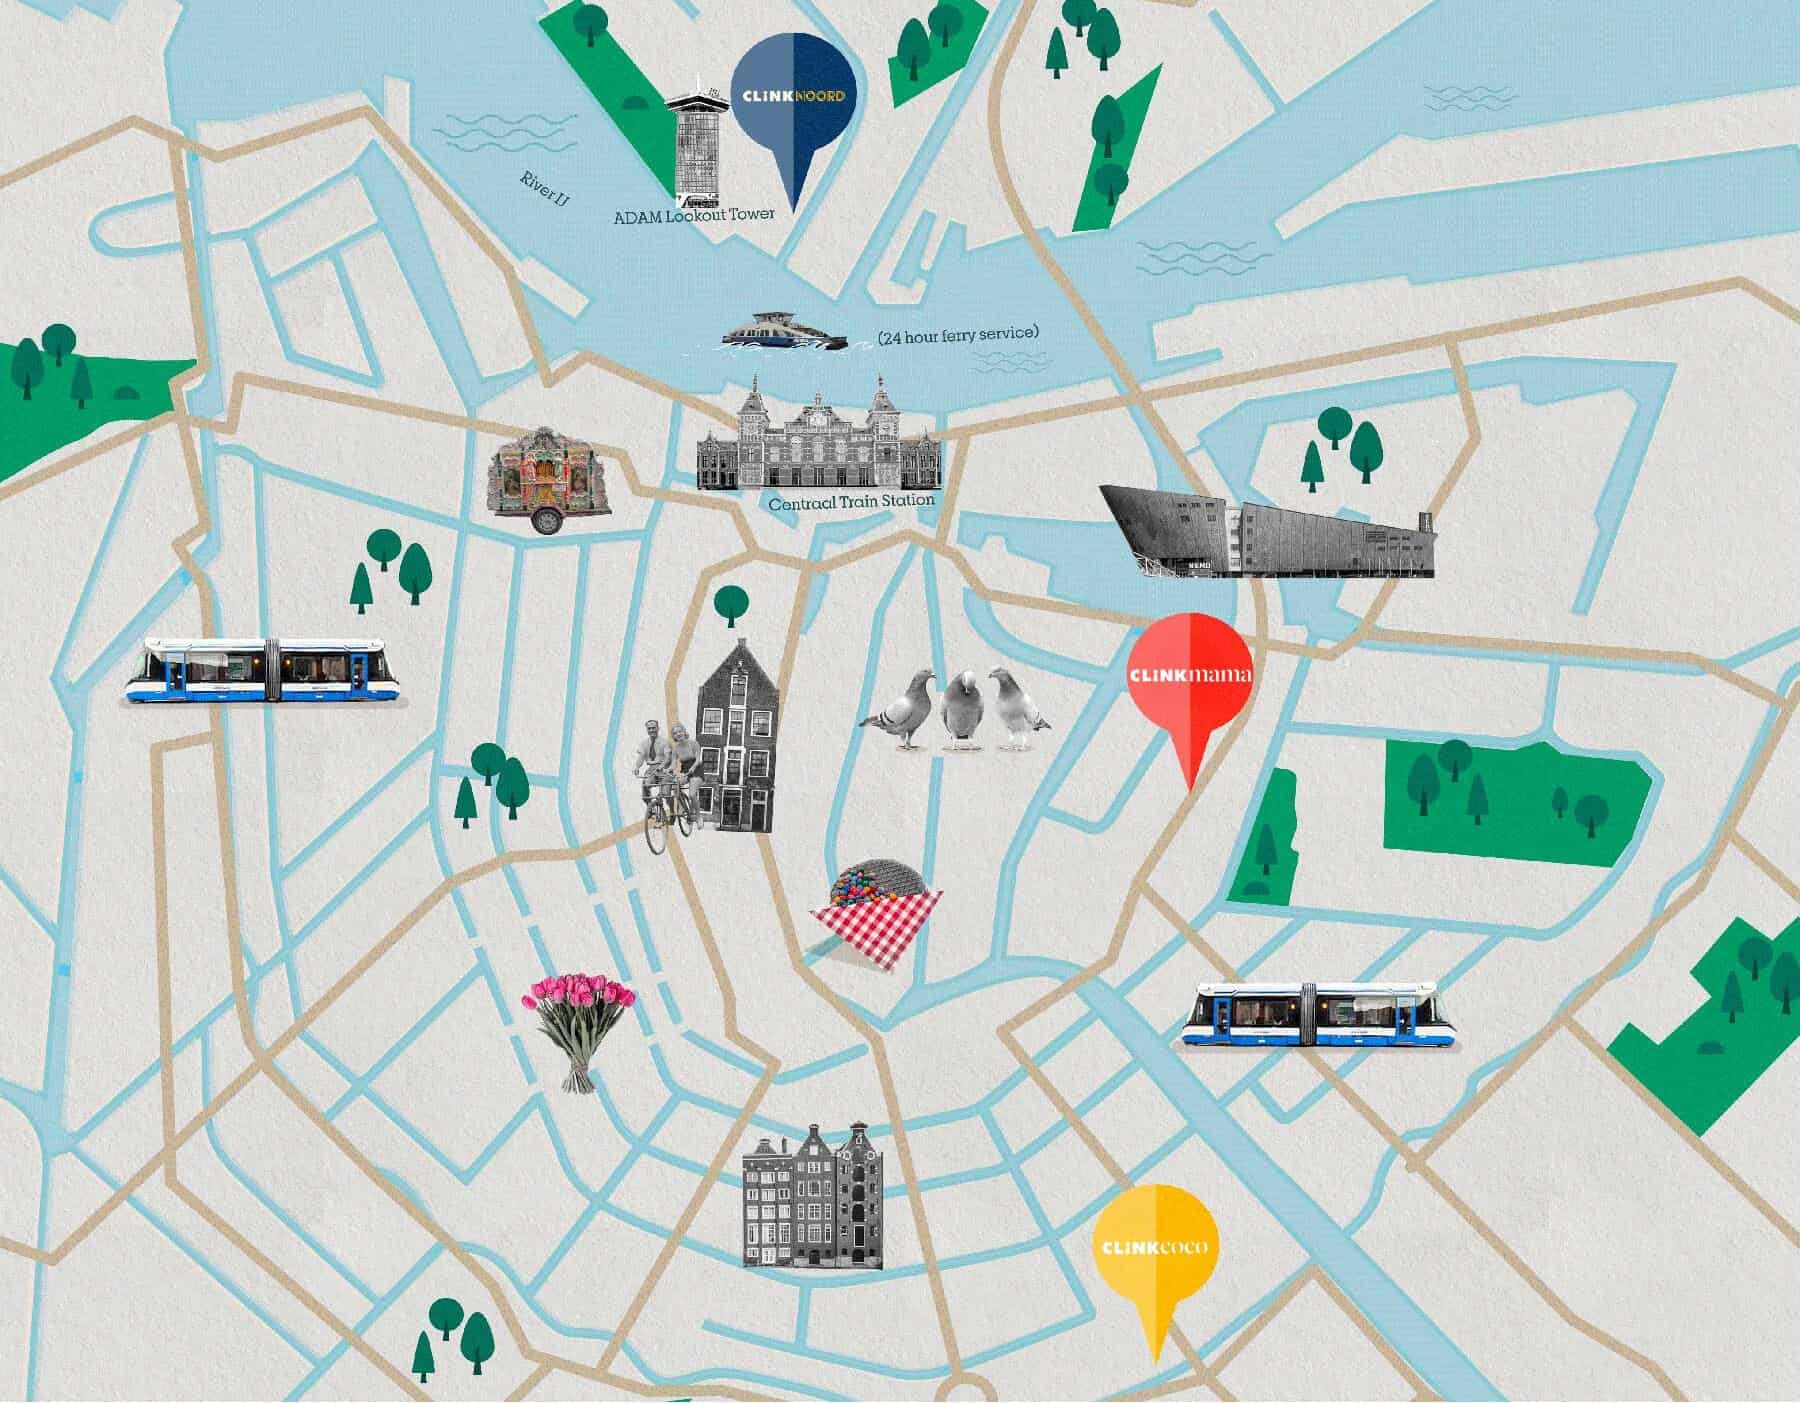 Plan de la ville d'Amsterdam avec ClinkNOORD, ClinkMama, ClinkCoco et les attractions touristiques